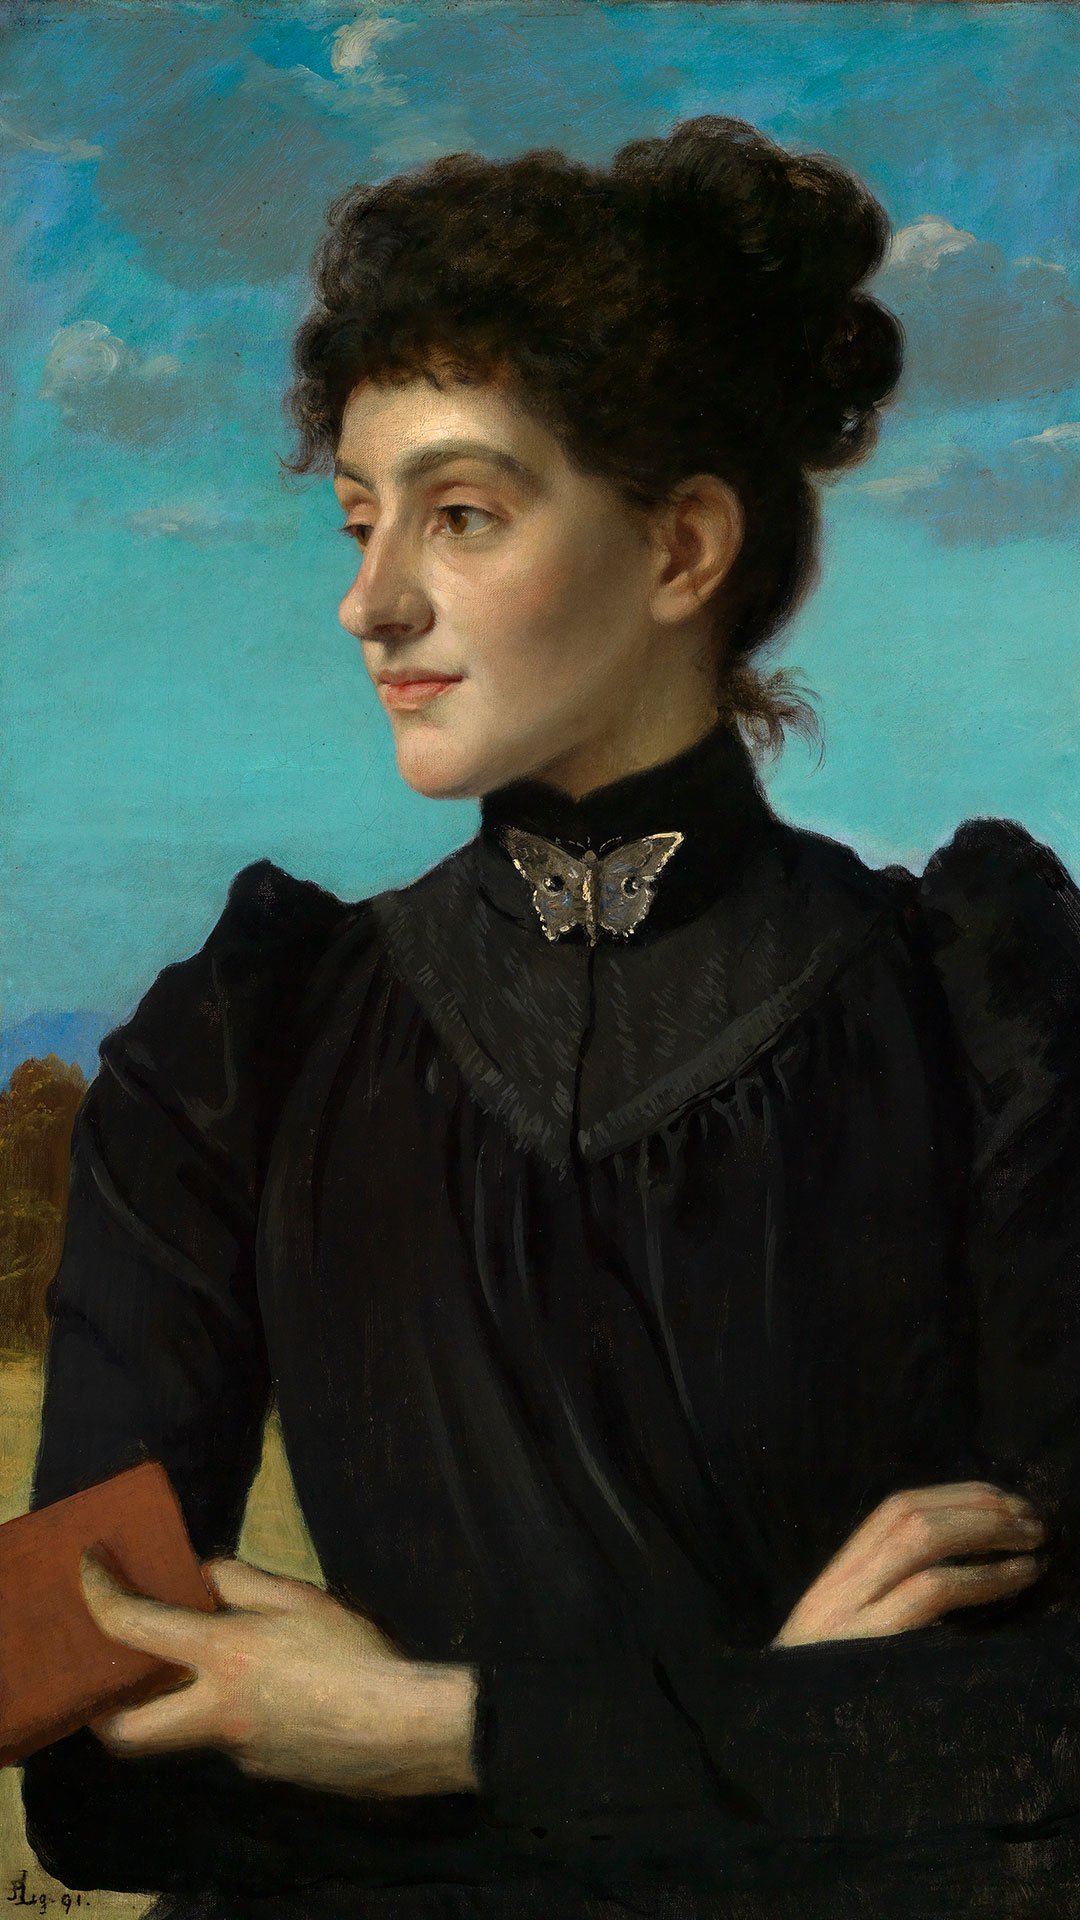 Abbildung Albert Langs Gemälde einer jungen Frau in einem schwarzen Kleid.